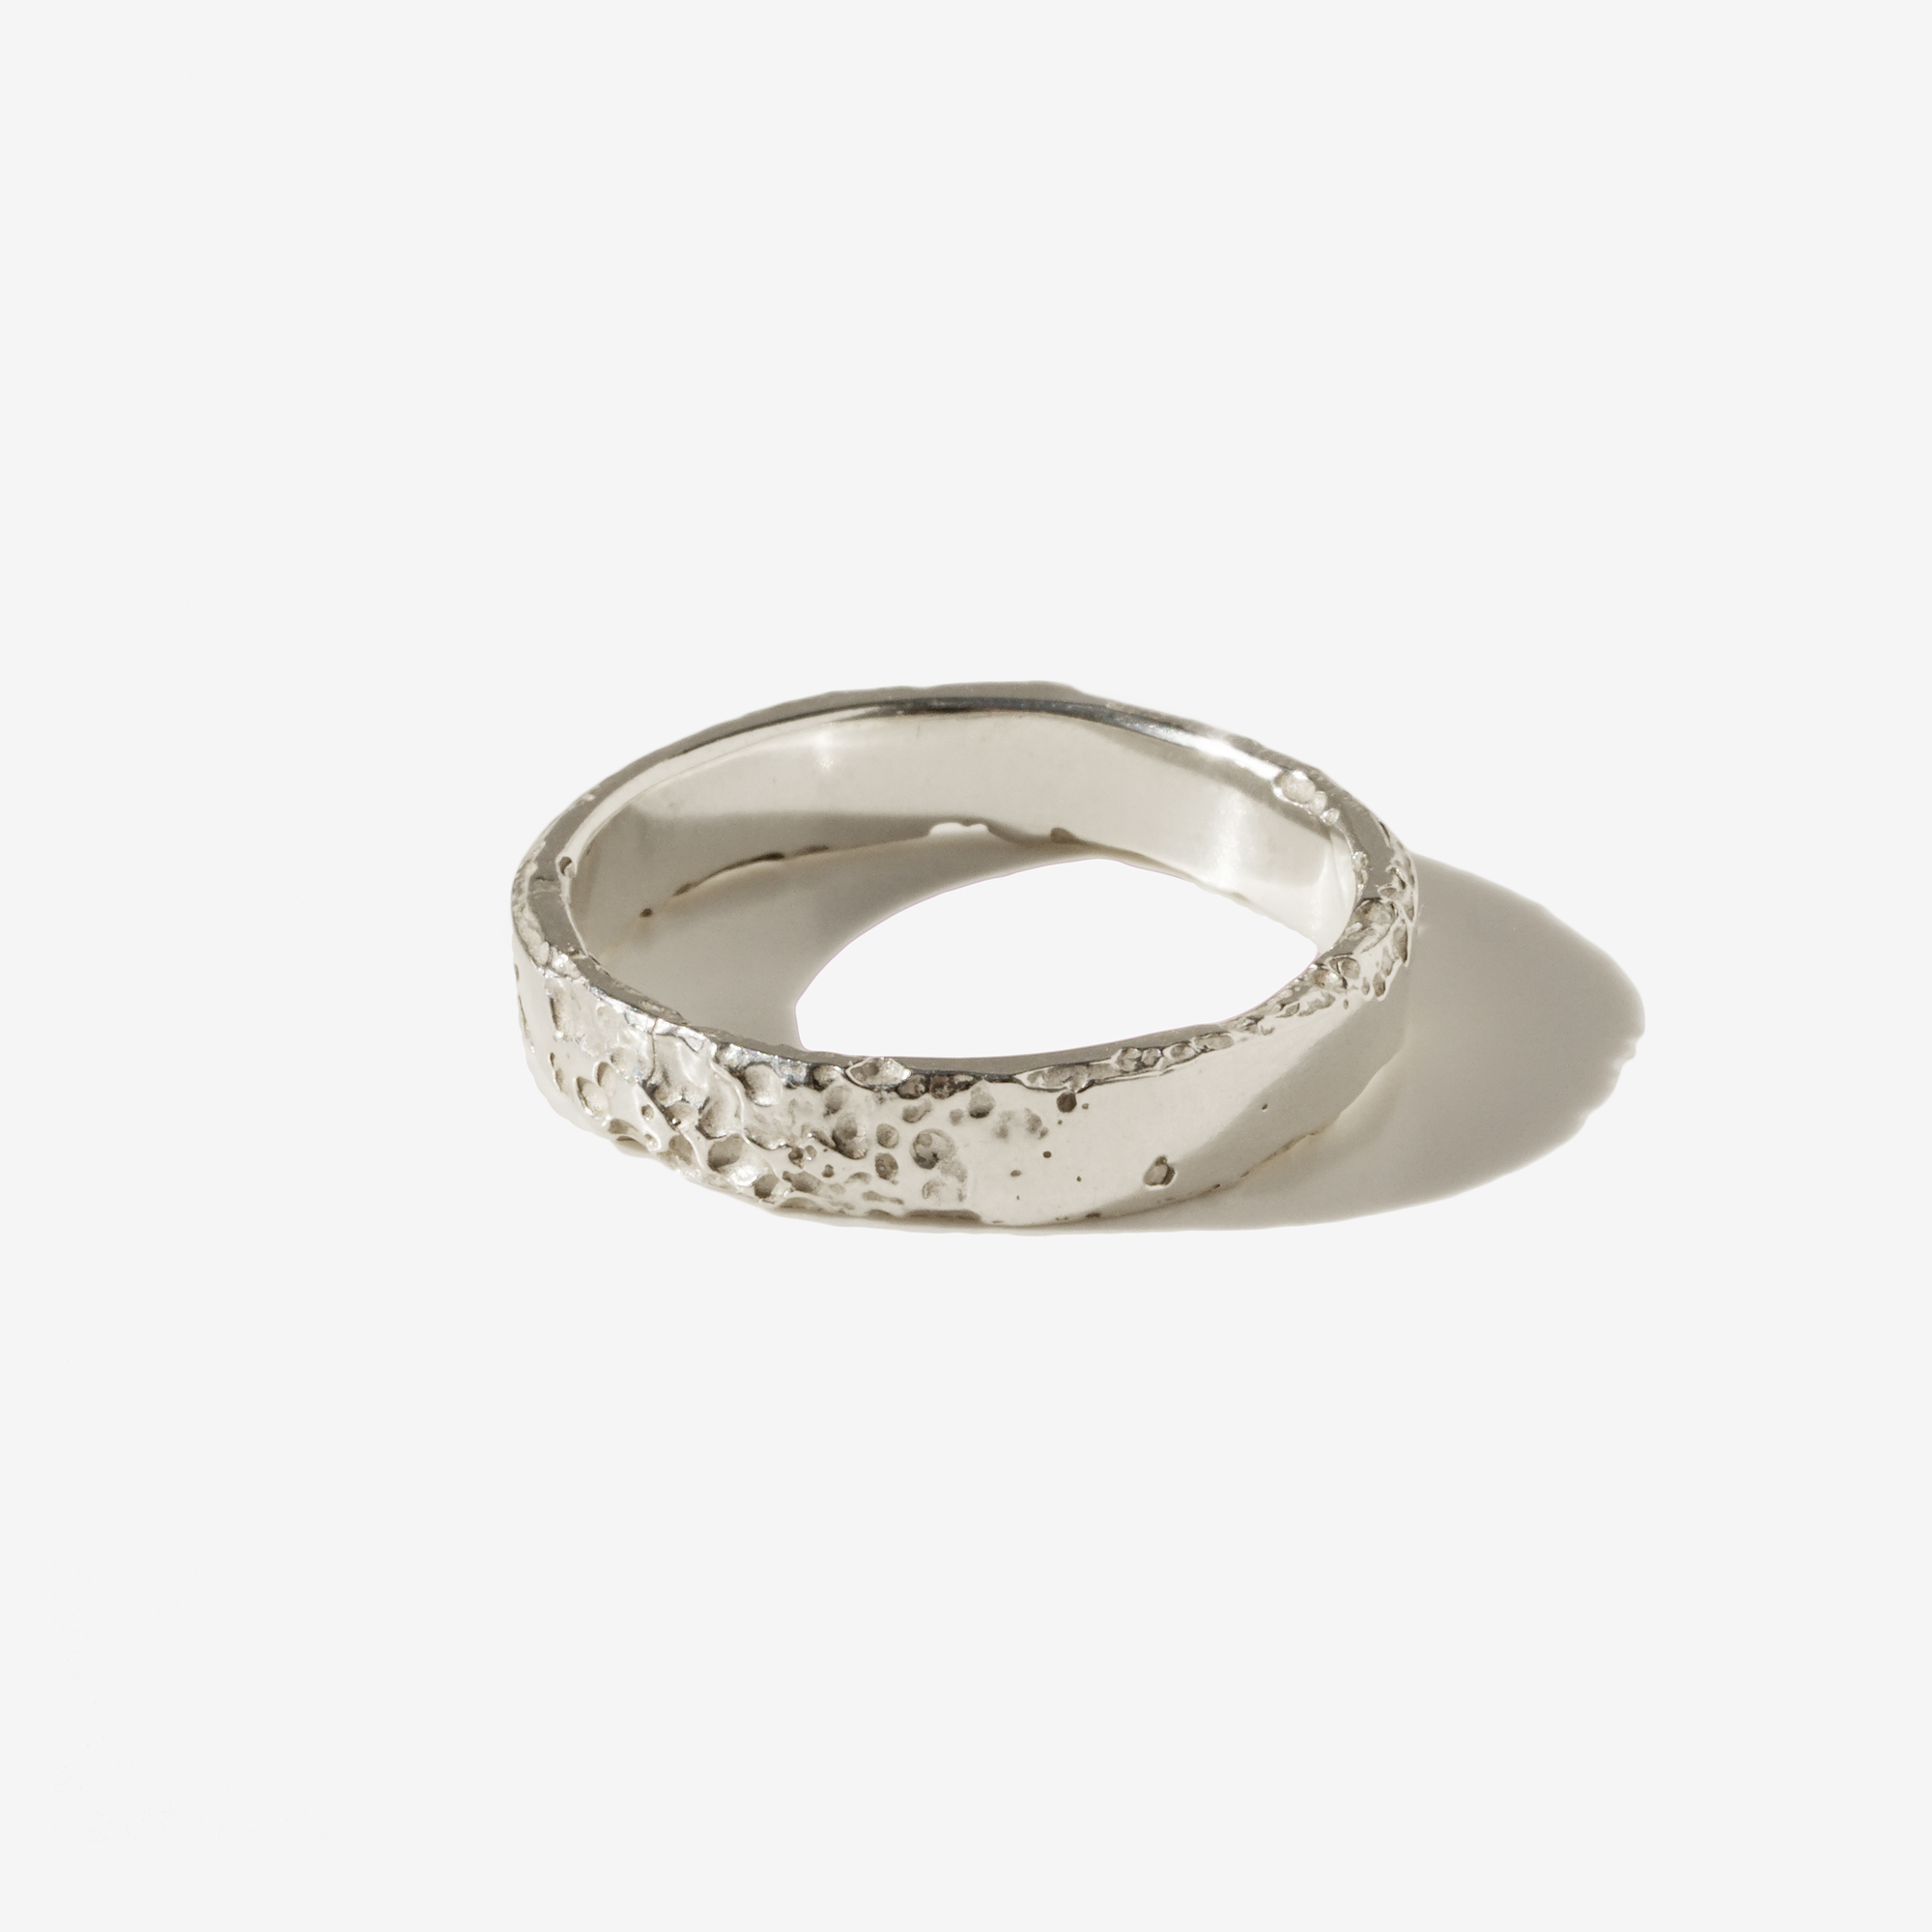 Thin Rose Gold Ring, Thin Silver Ring, Thumb Ring, Silver Stacking Ring,  Thin | eBay